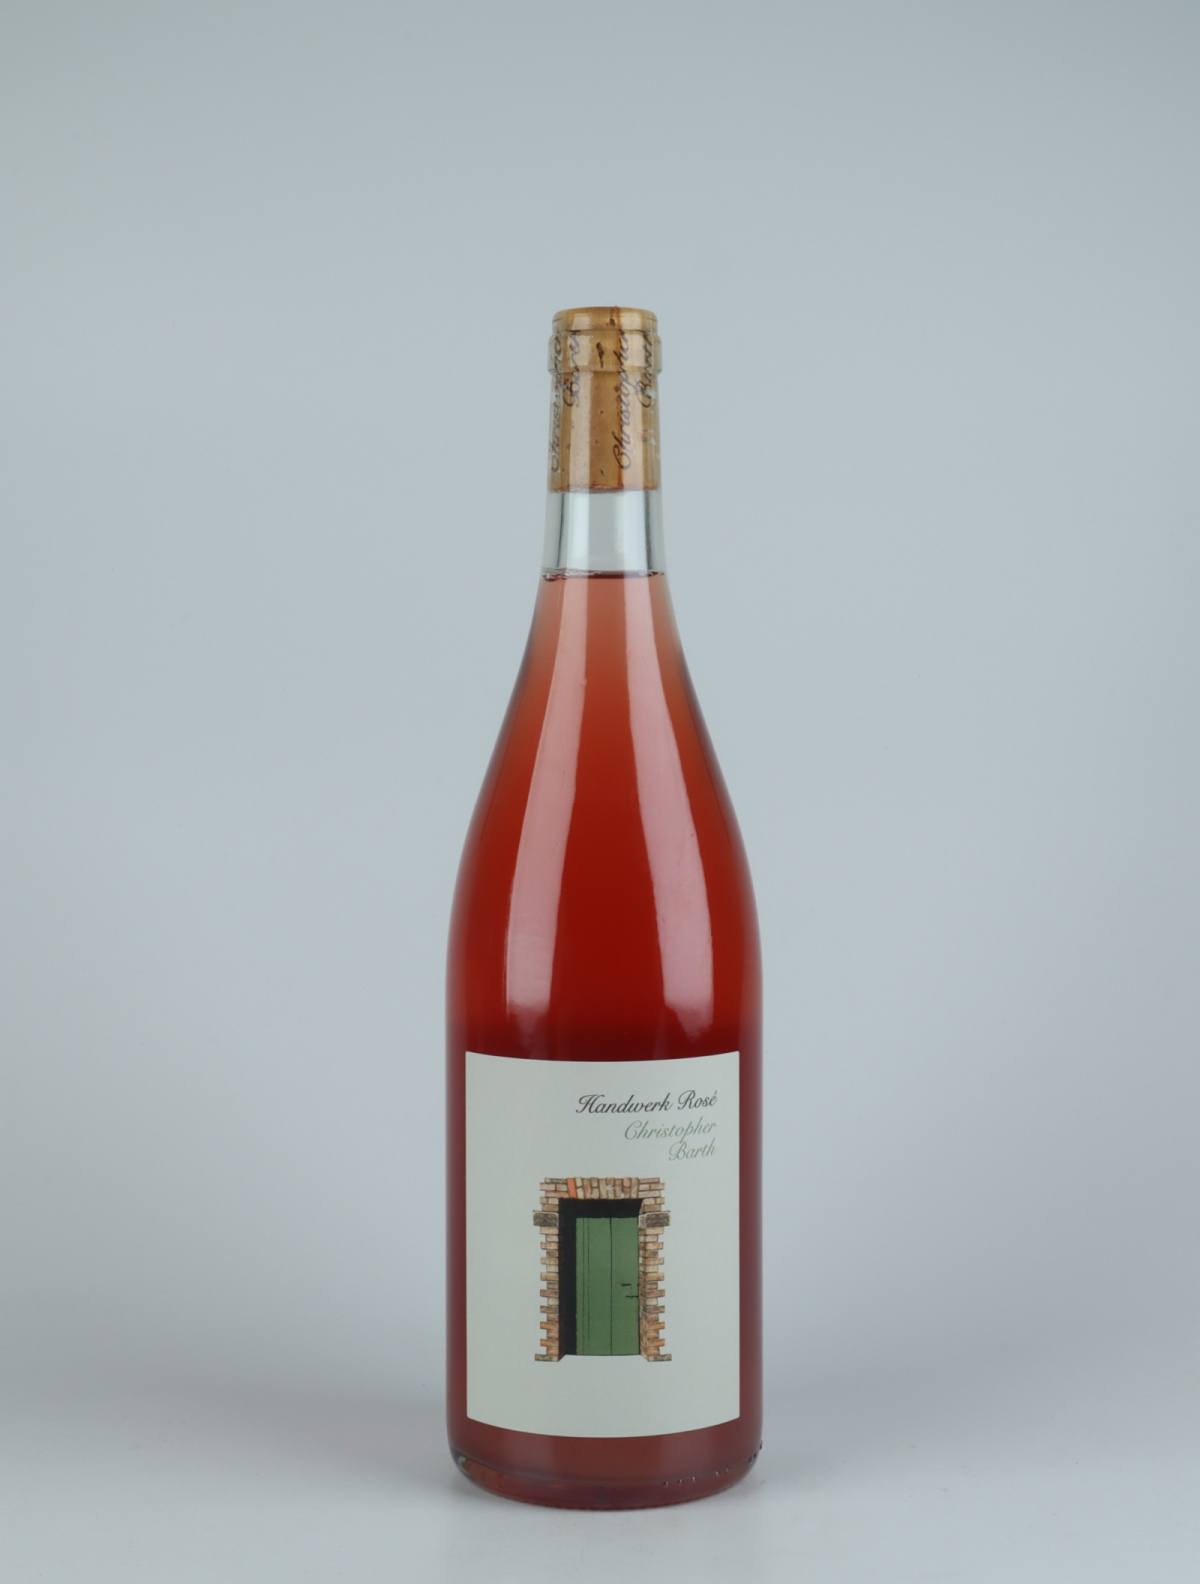 A bottle 2020 Handwerk Rosé Rosé from Christopher Barth, Rheinhessen in Germany